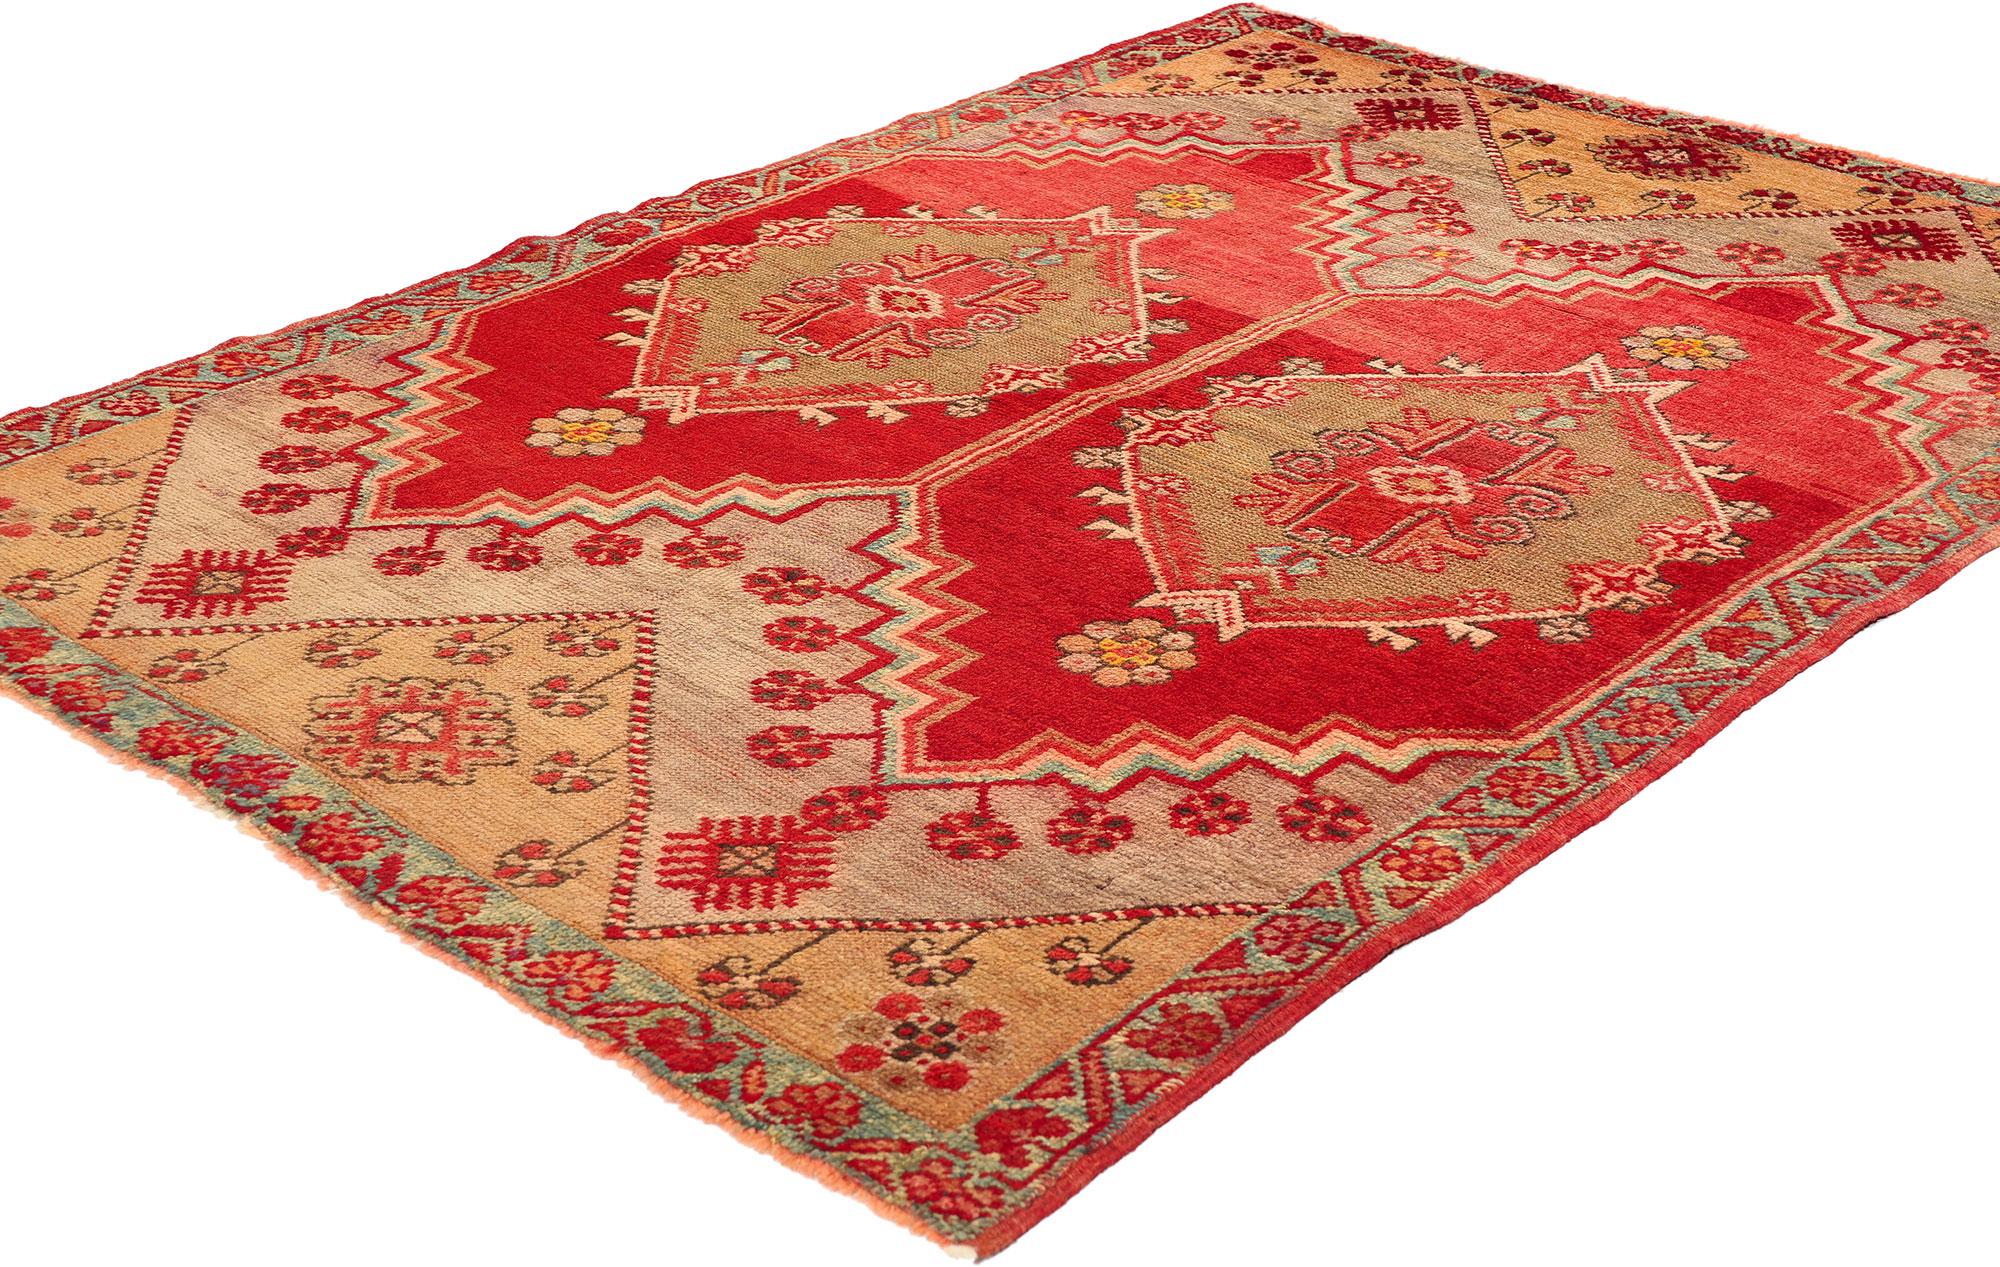 51123 Vintage Rot Türkisch Oushak Teppich, 03'07 X 04'11. Bitte beachten Sie diese Auflistung ist für ein Stück; es hat ein passendes Stück und wir haben ein Bild hinzugefügt, so dass Sie sie zusammen sehen können.
Dieser handgeknüpfte türkische